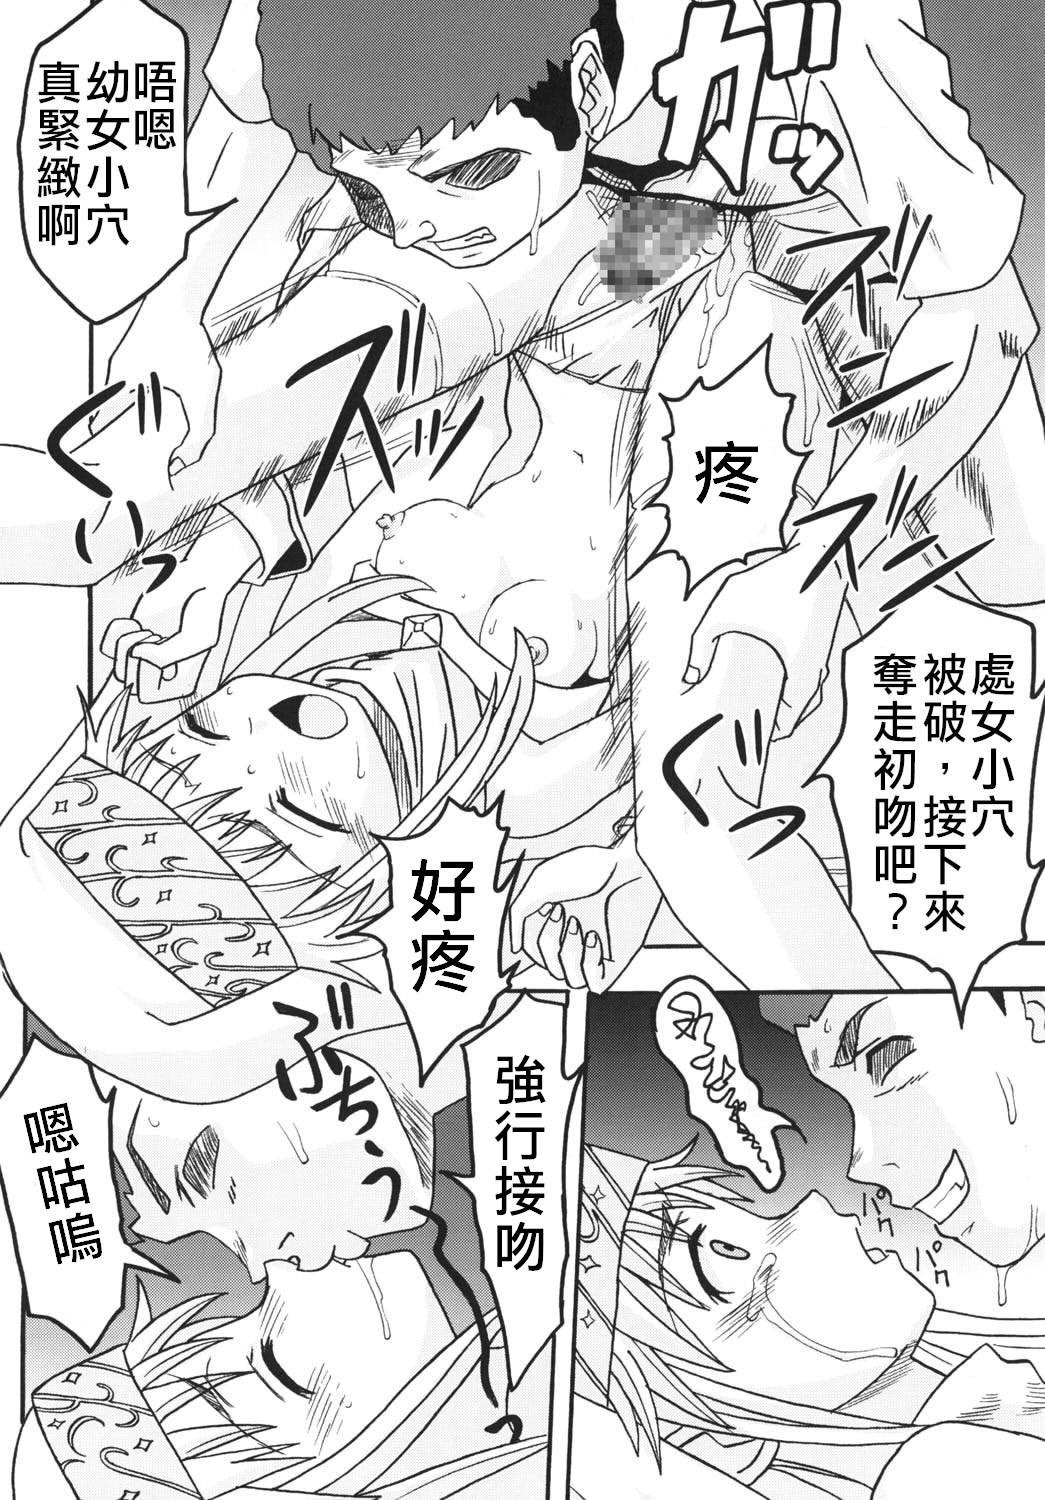 Toaru Otaku no Index #1 | 某魔术的淫书目录 #01 7